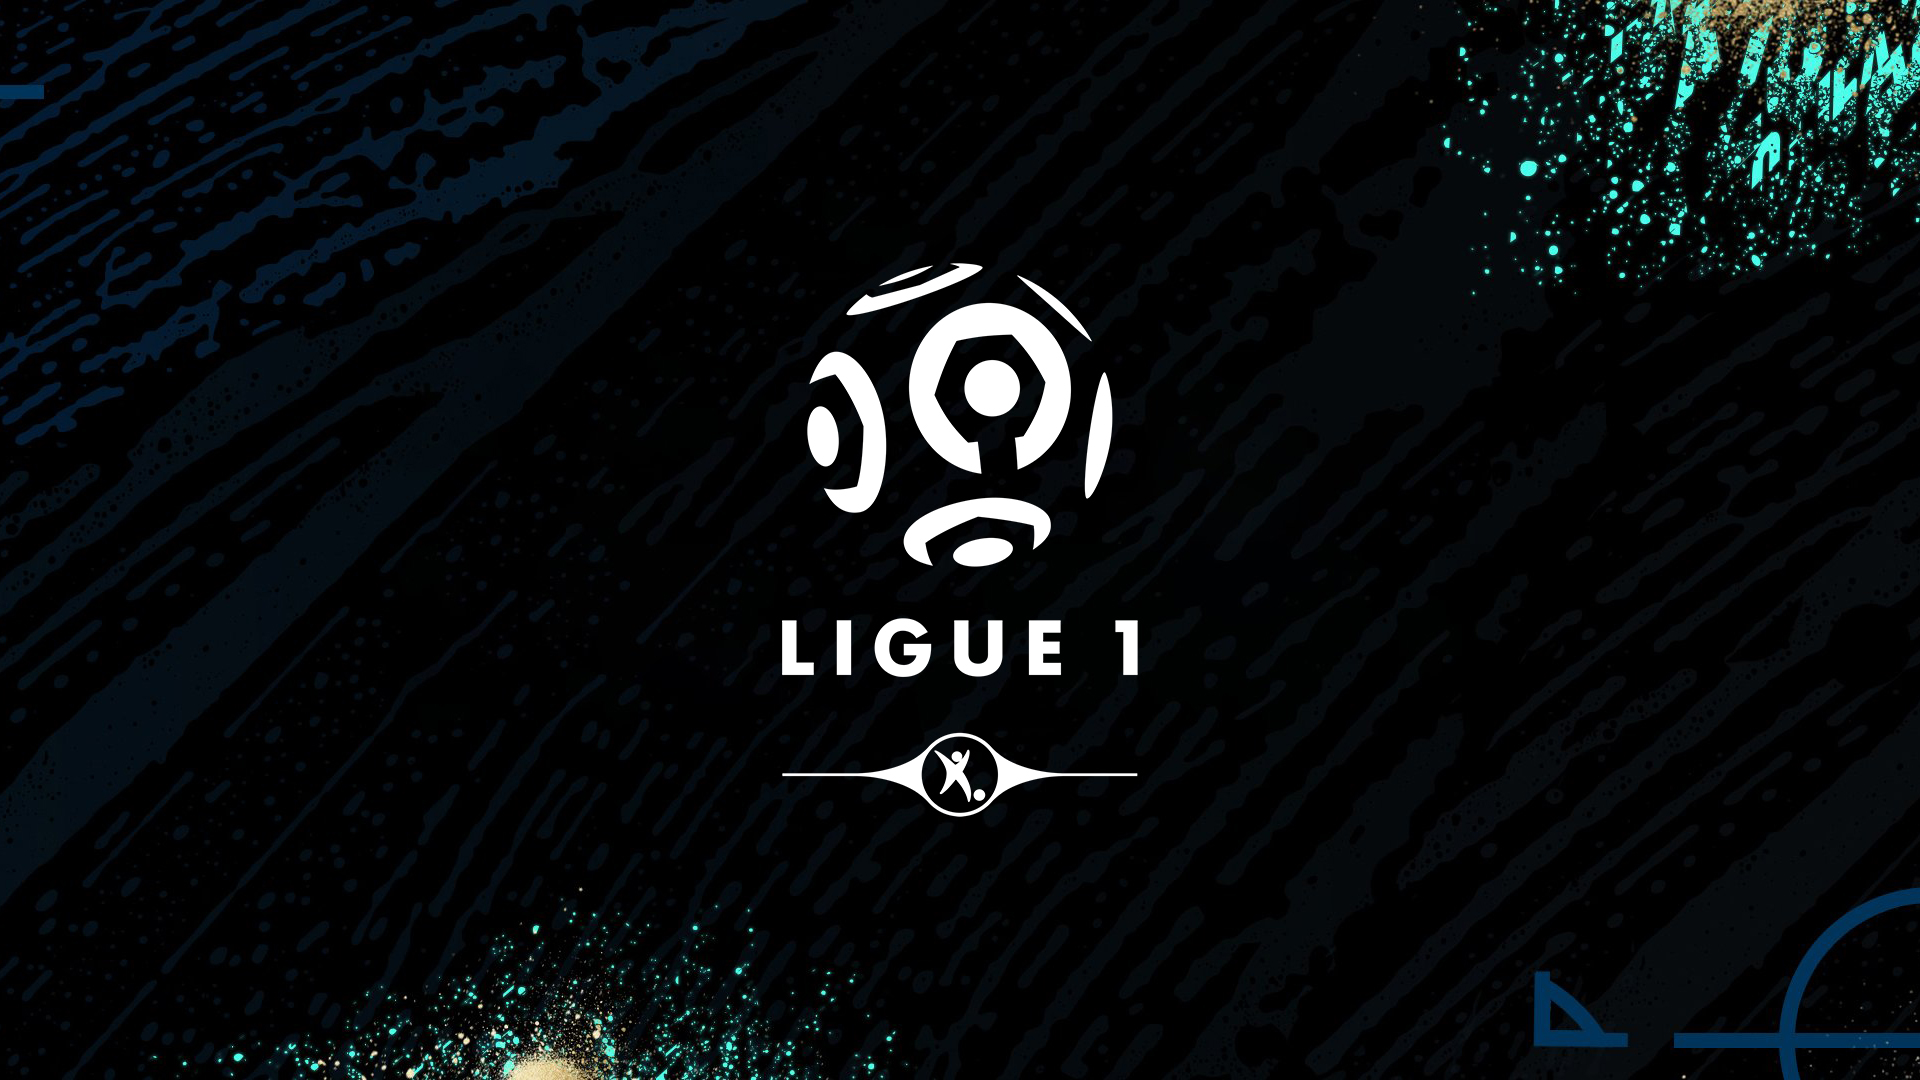 FIFA 20: TOTSSF Ligue 1 Conforama Team Revealed - FifaUltimateTeam.it - UK